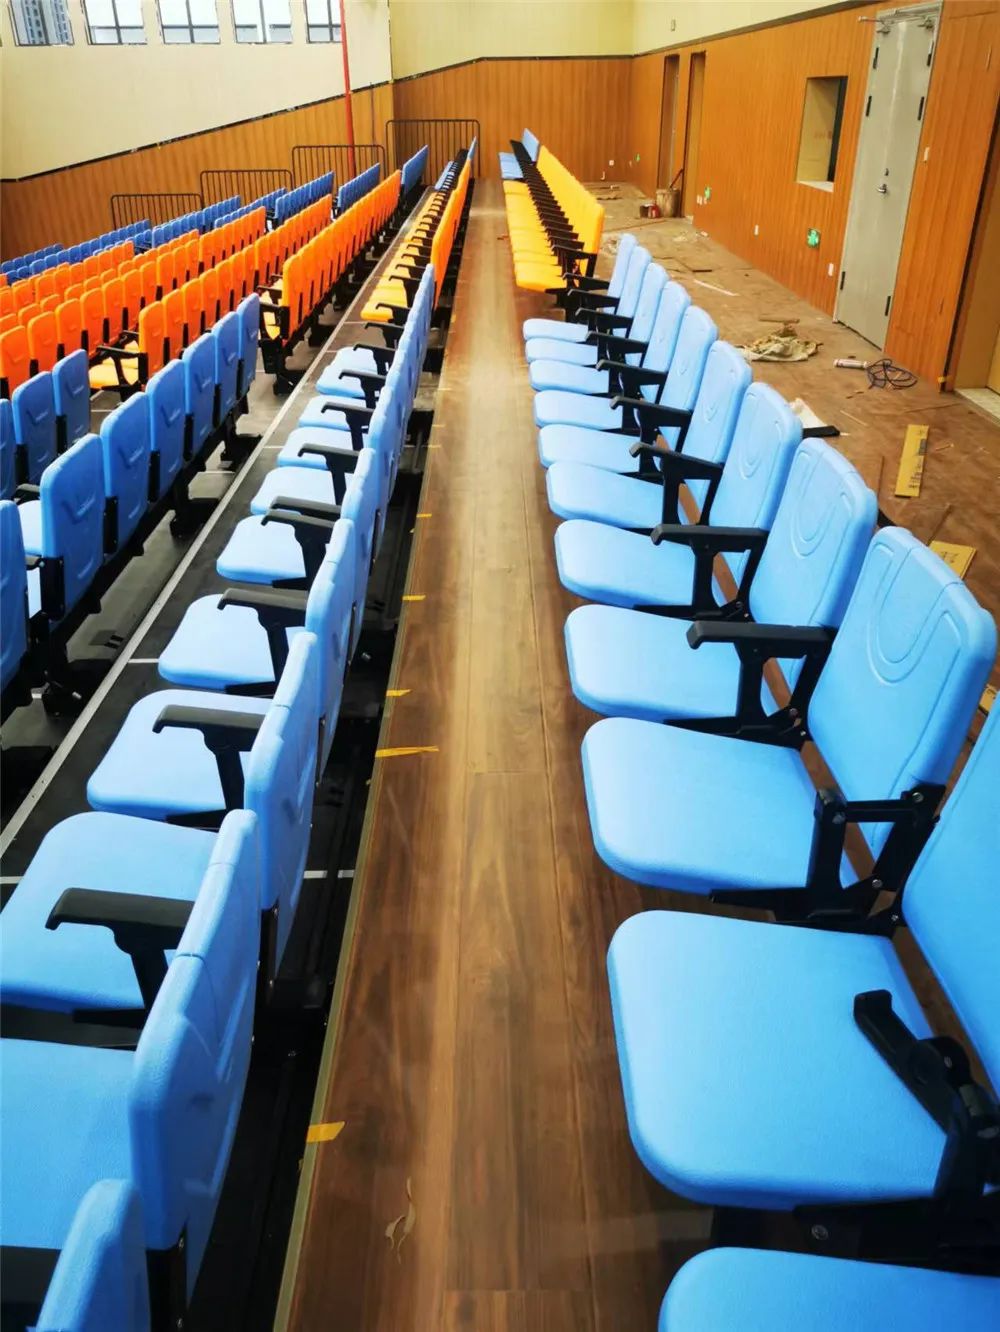 体育场馆中的四川看台座椅安装方式有那几种？